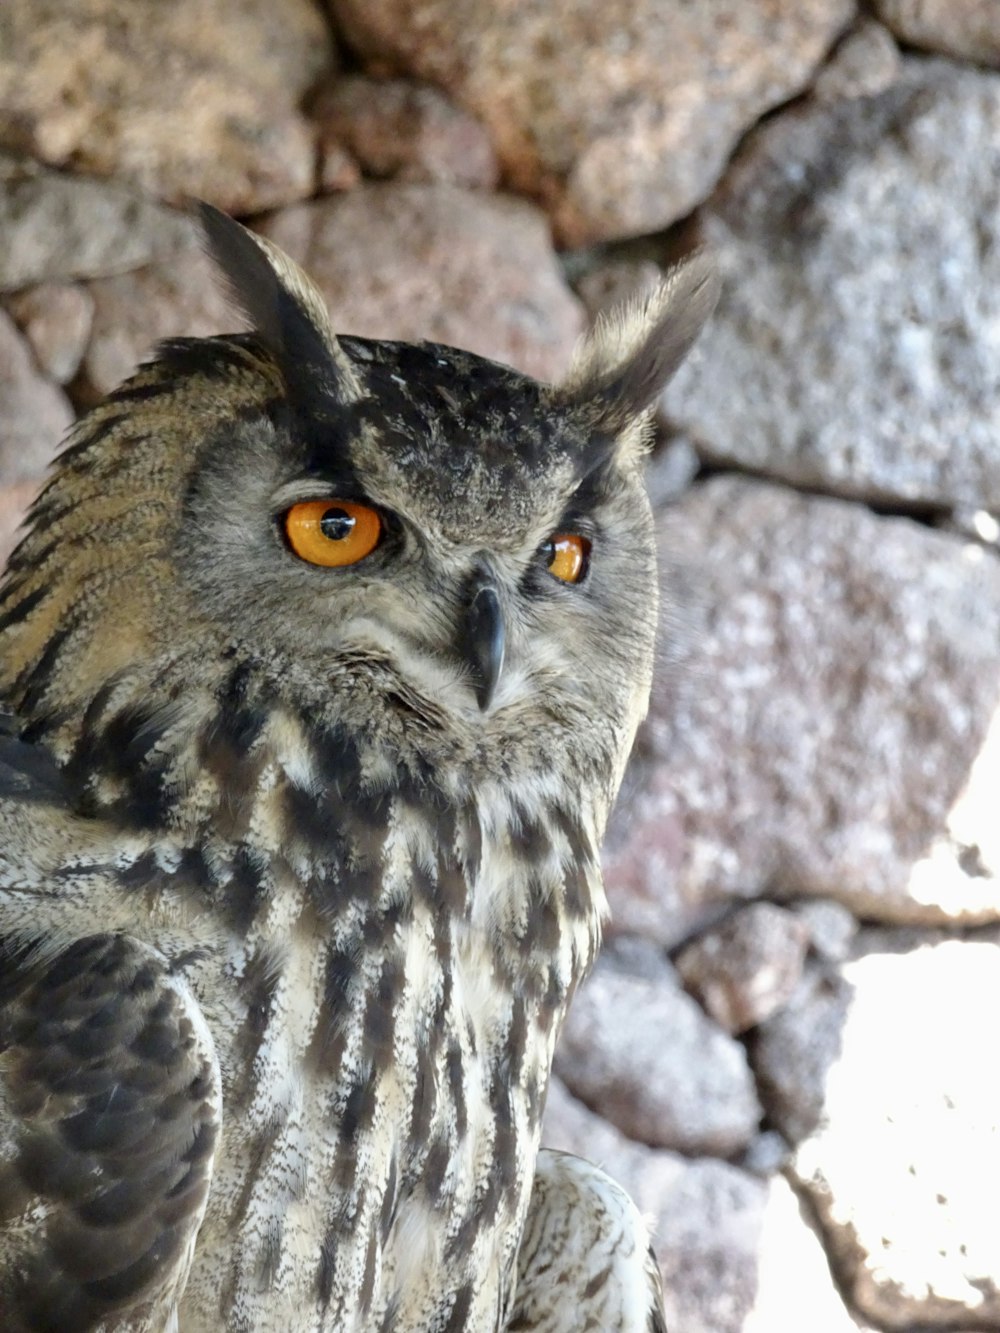 a close up of an owl near a rock wall